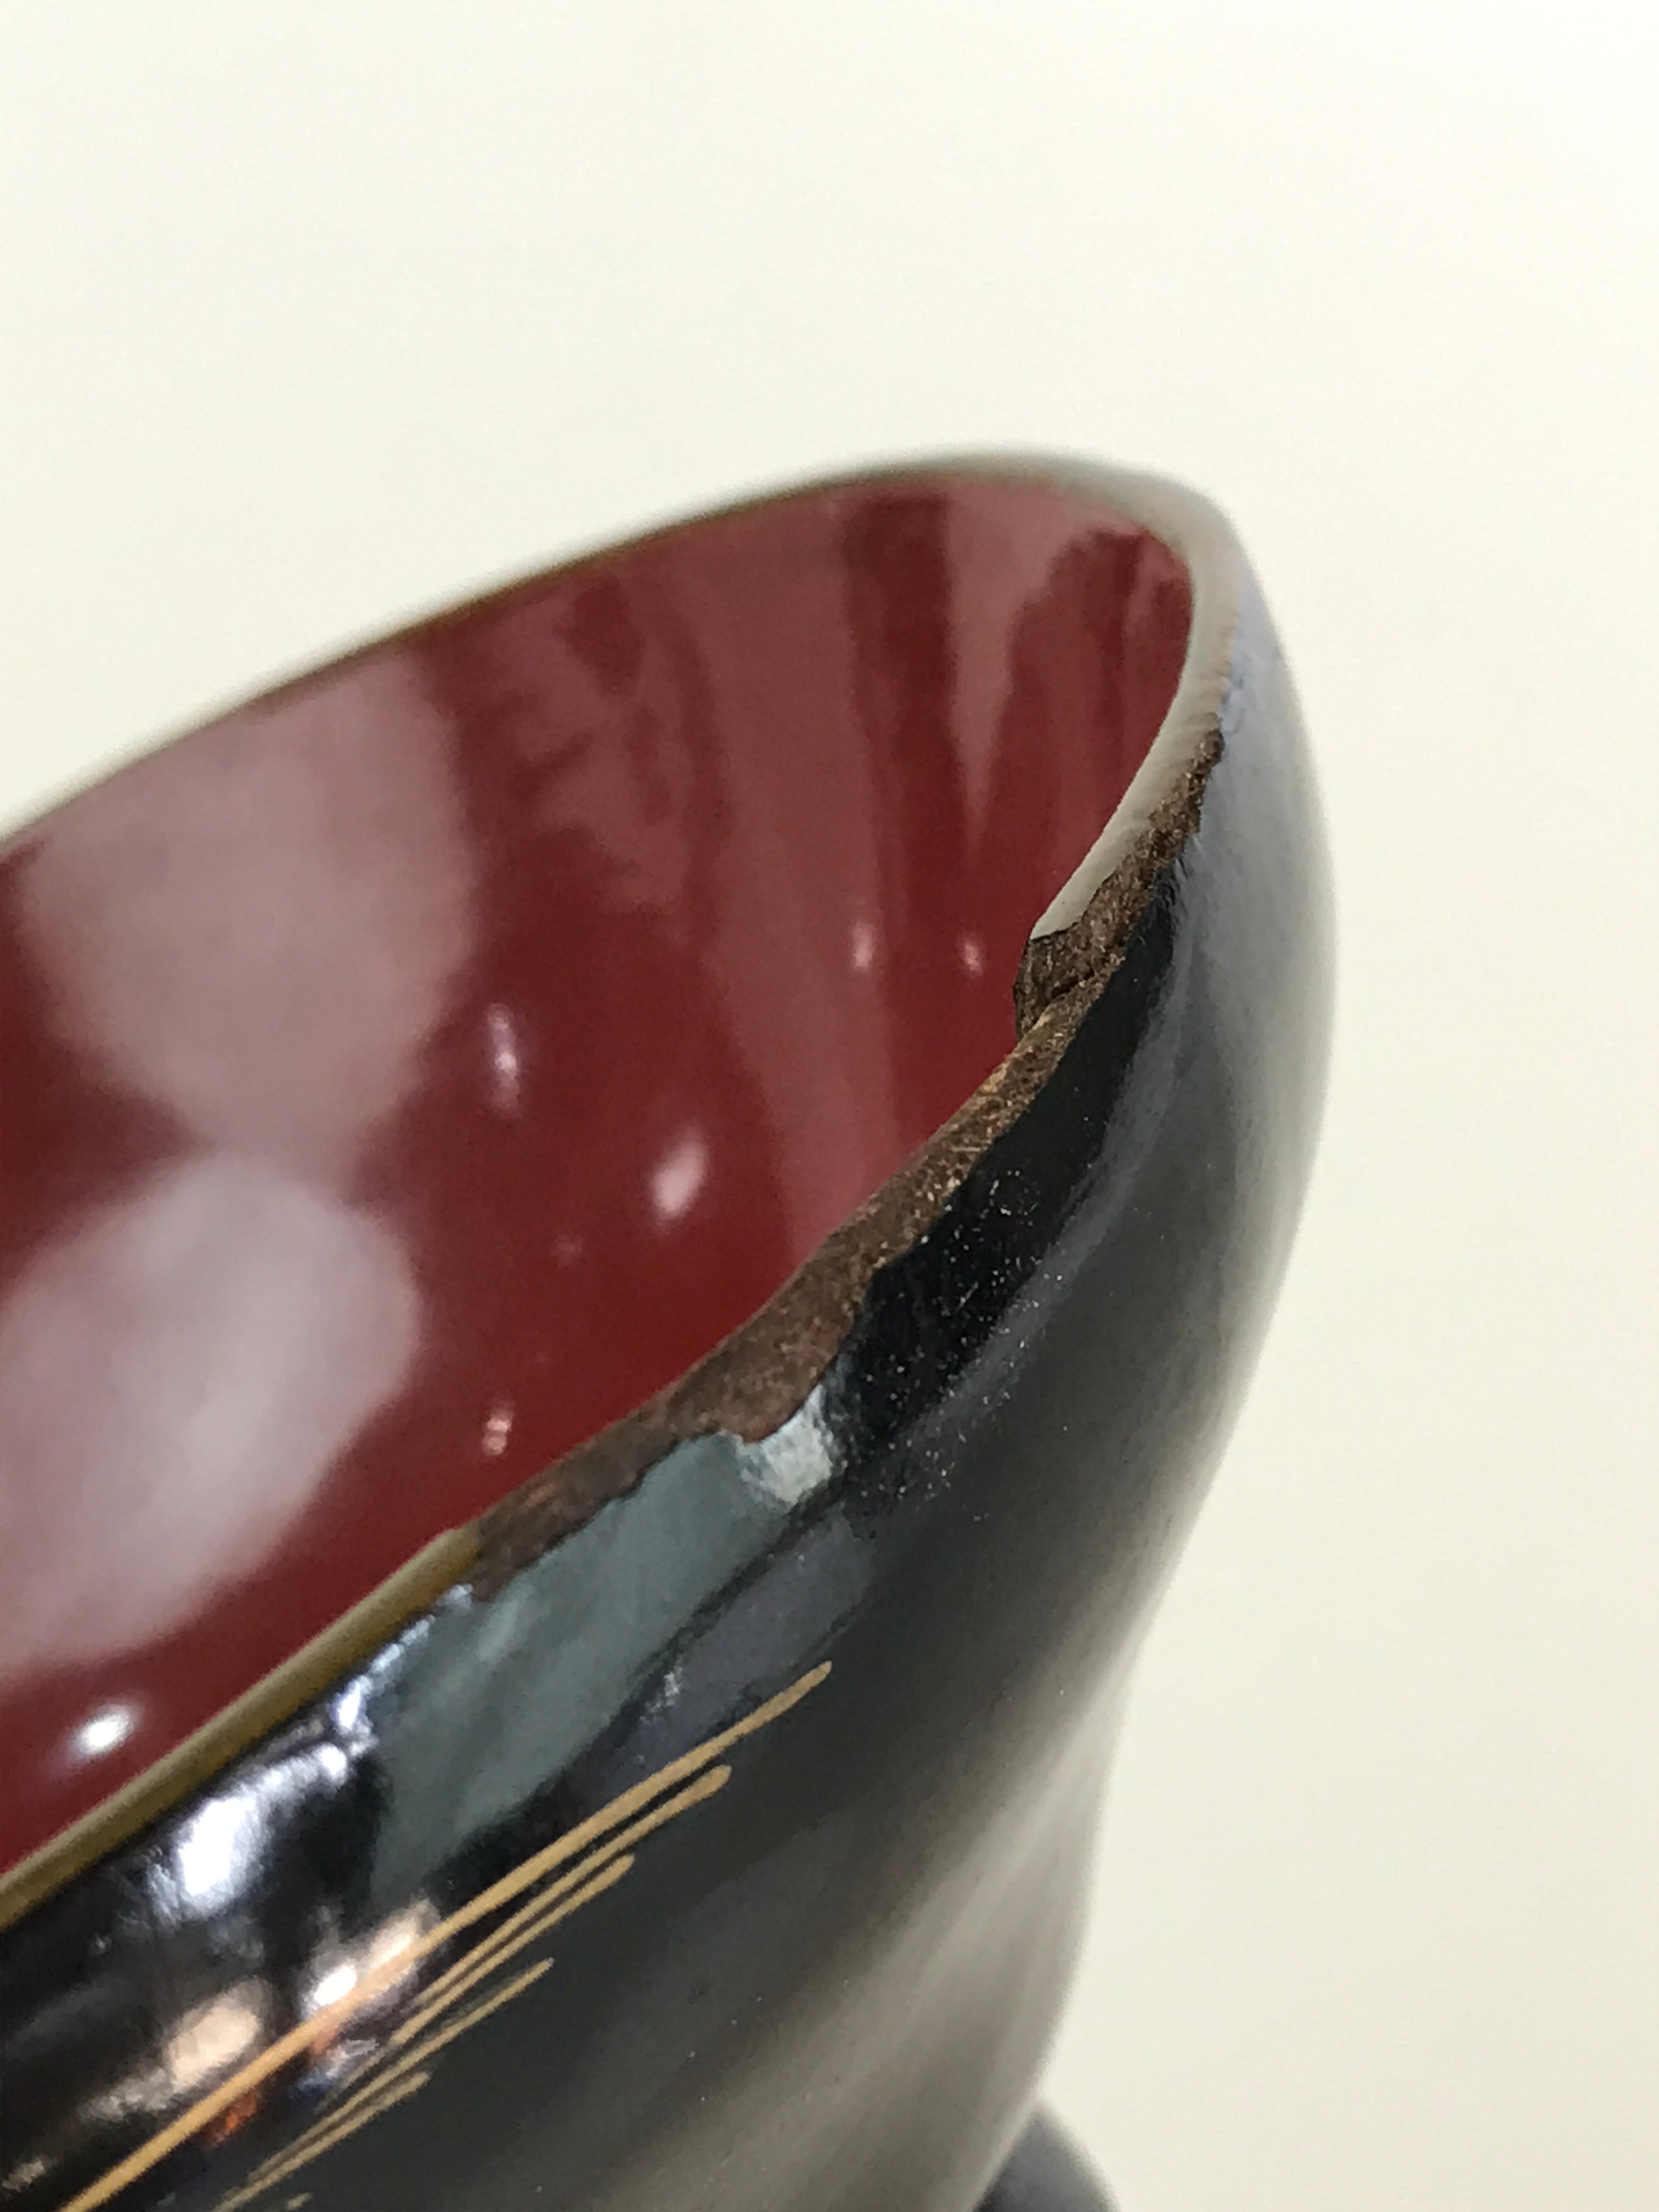 Japanese Lacquerware Lidded Bowl Vtg Urushi Makie Red Black Owan Soup LB16